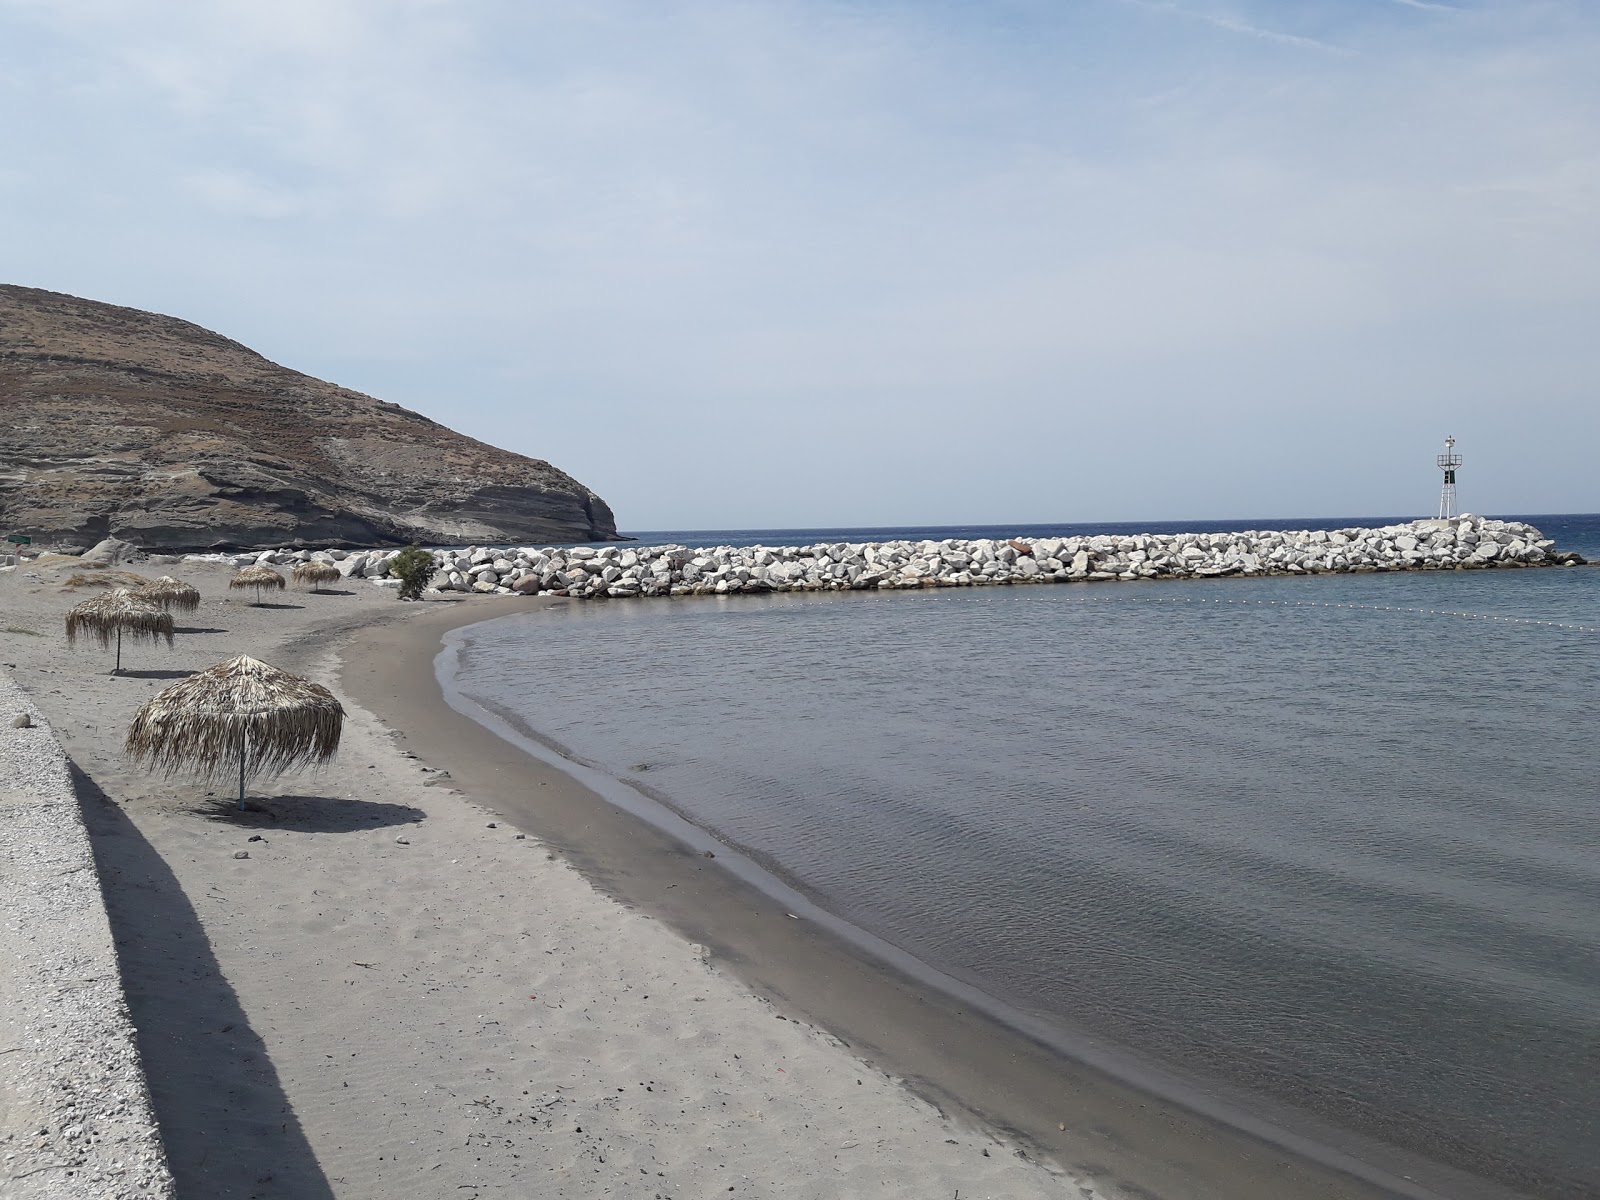 Agios Efstratos beach'in fotoğrafı gri kum yüzey ile